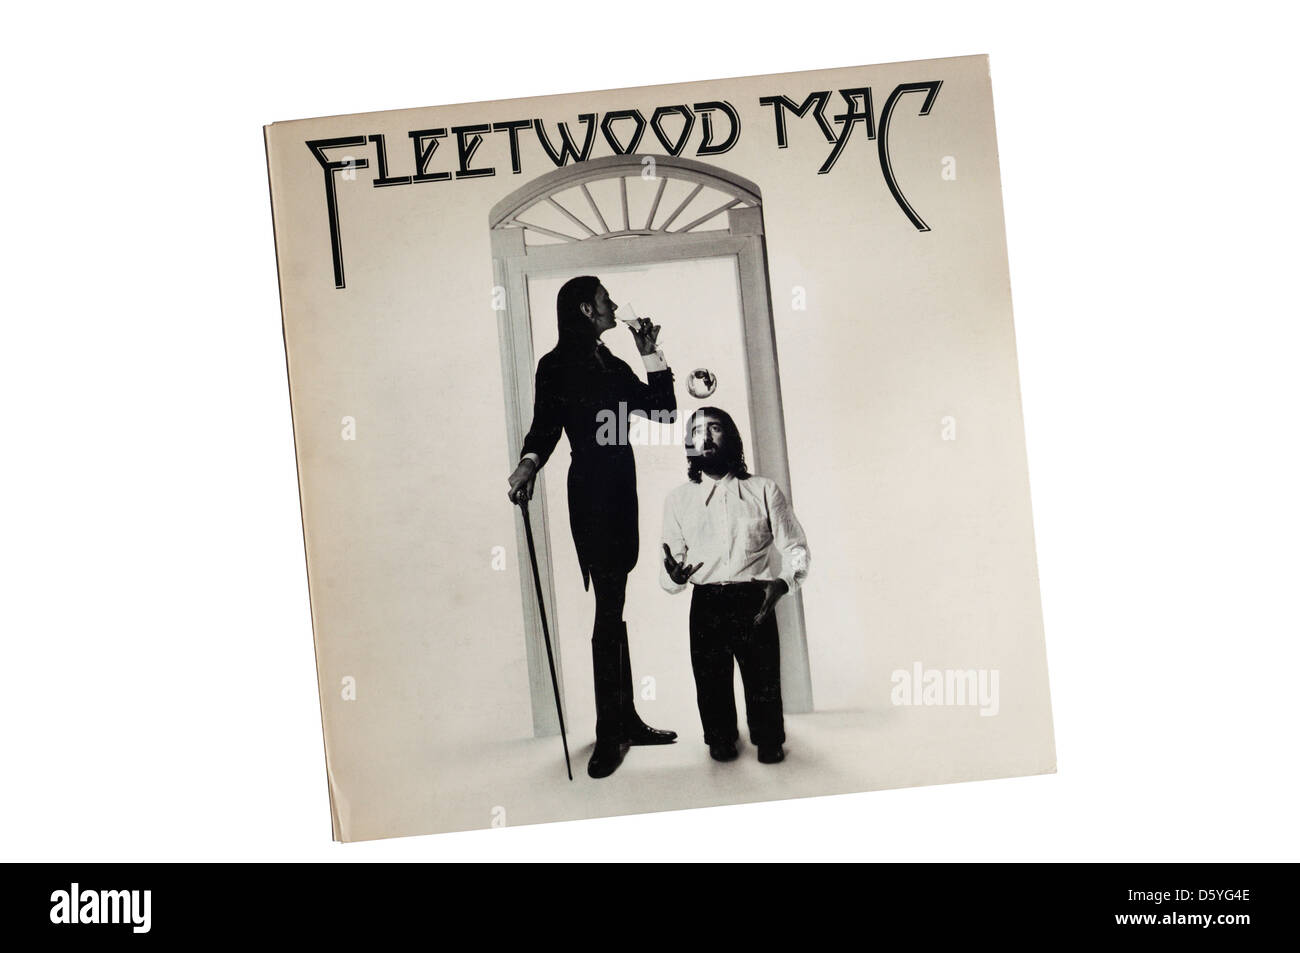 Fleetwood Mac è stato il decimo album per la banda angloamericano Fleetwood Mac, pubblicato nel 1975, e il loro secondo album omonimo. Foto Stock